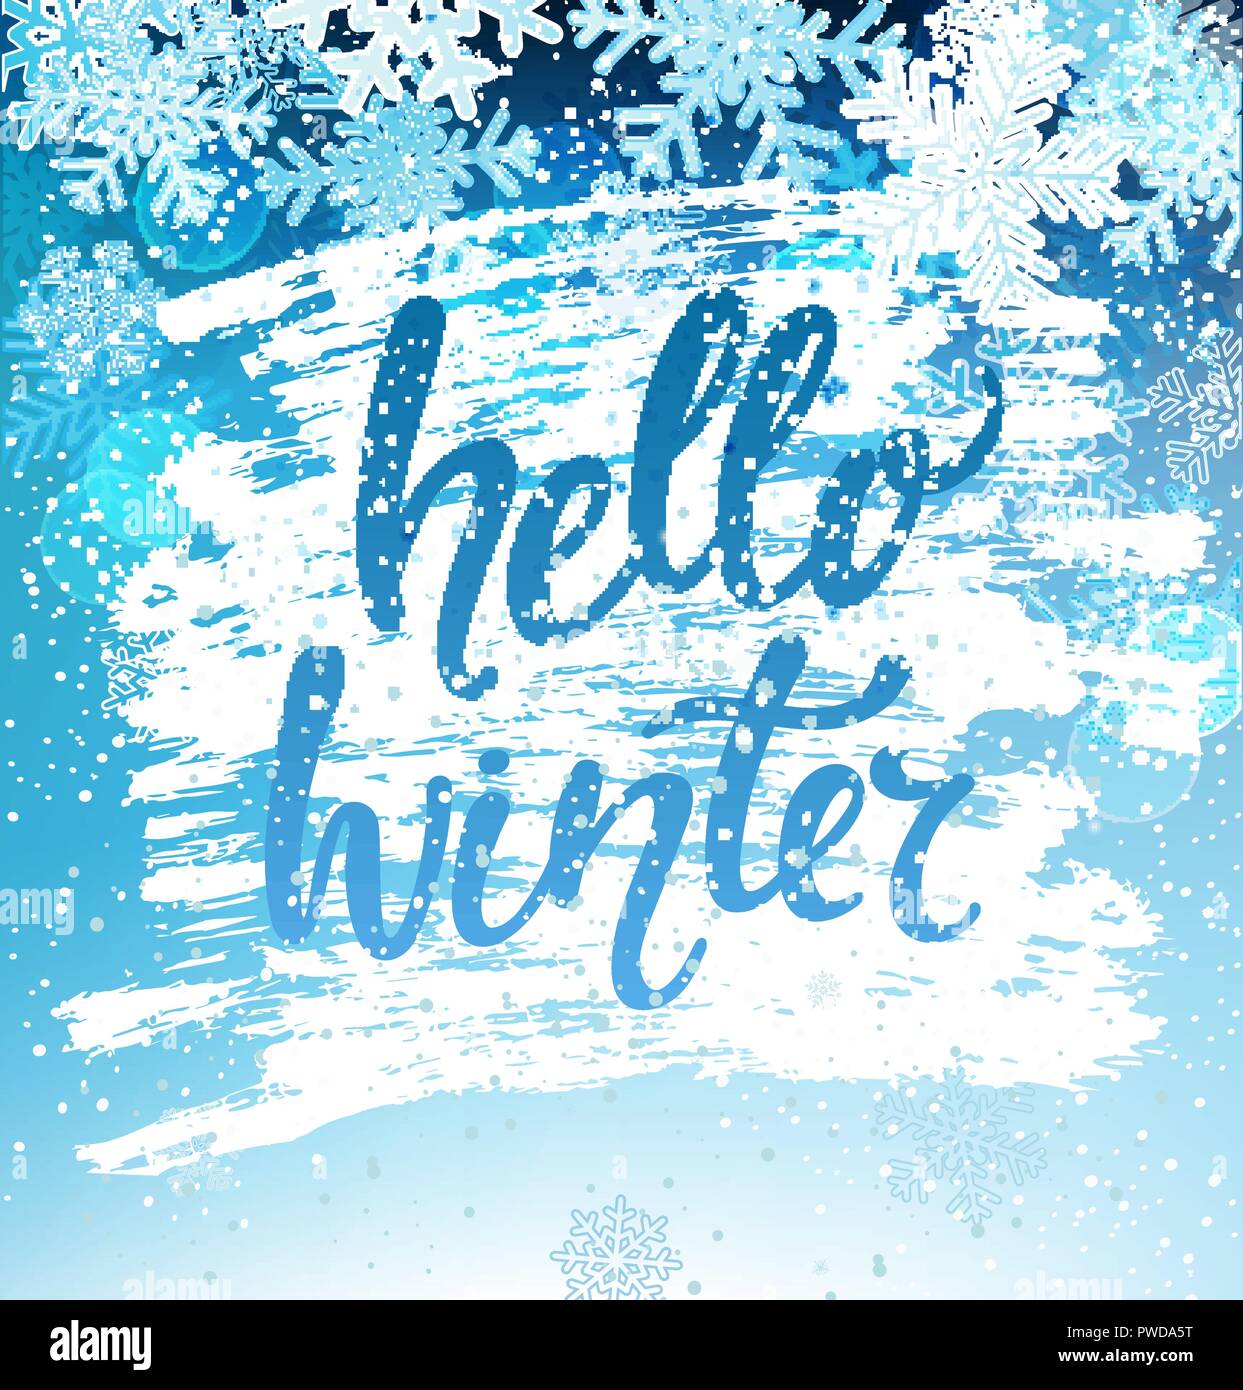 Hallo Winter Grußkarte mit Schneeflocken. Gruß Winter mit Silvester und Weihnachten Hand gezeichnet Schriftzug. Vector Illustration. Stock Vektor